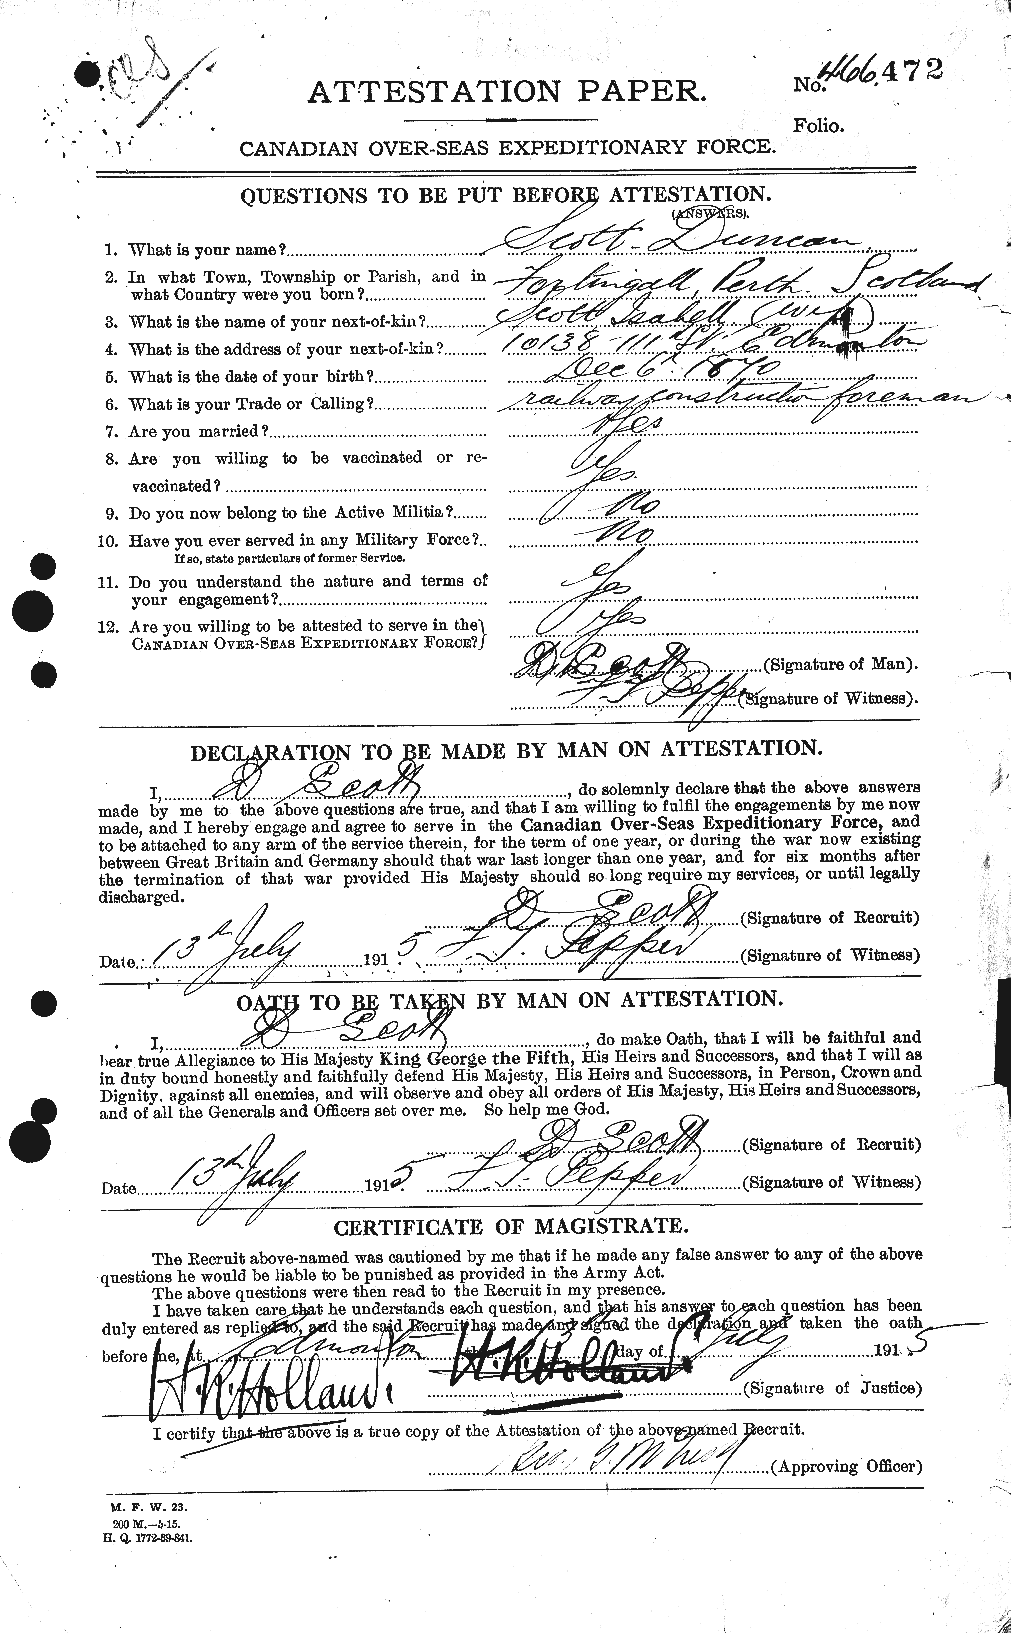 Dossiers du Personnel de la Première Guerre mondiale - CEC 085352a